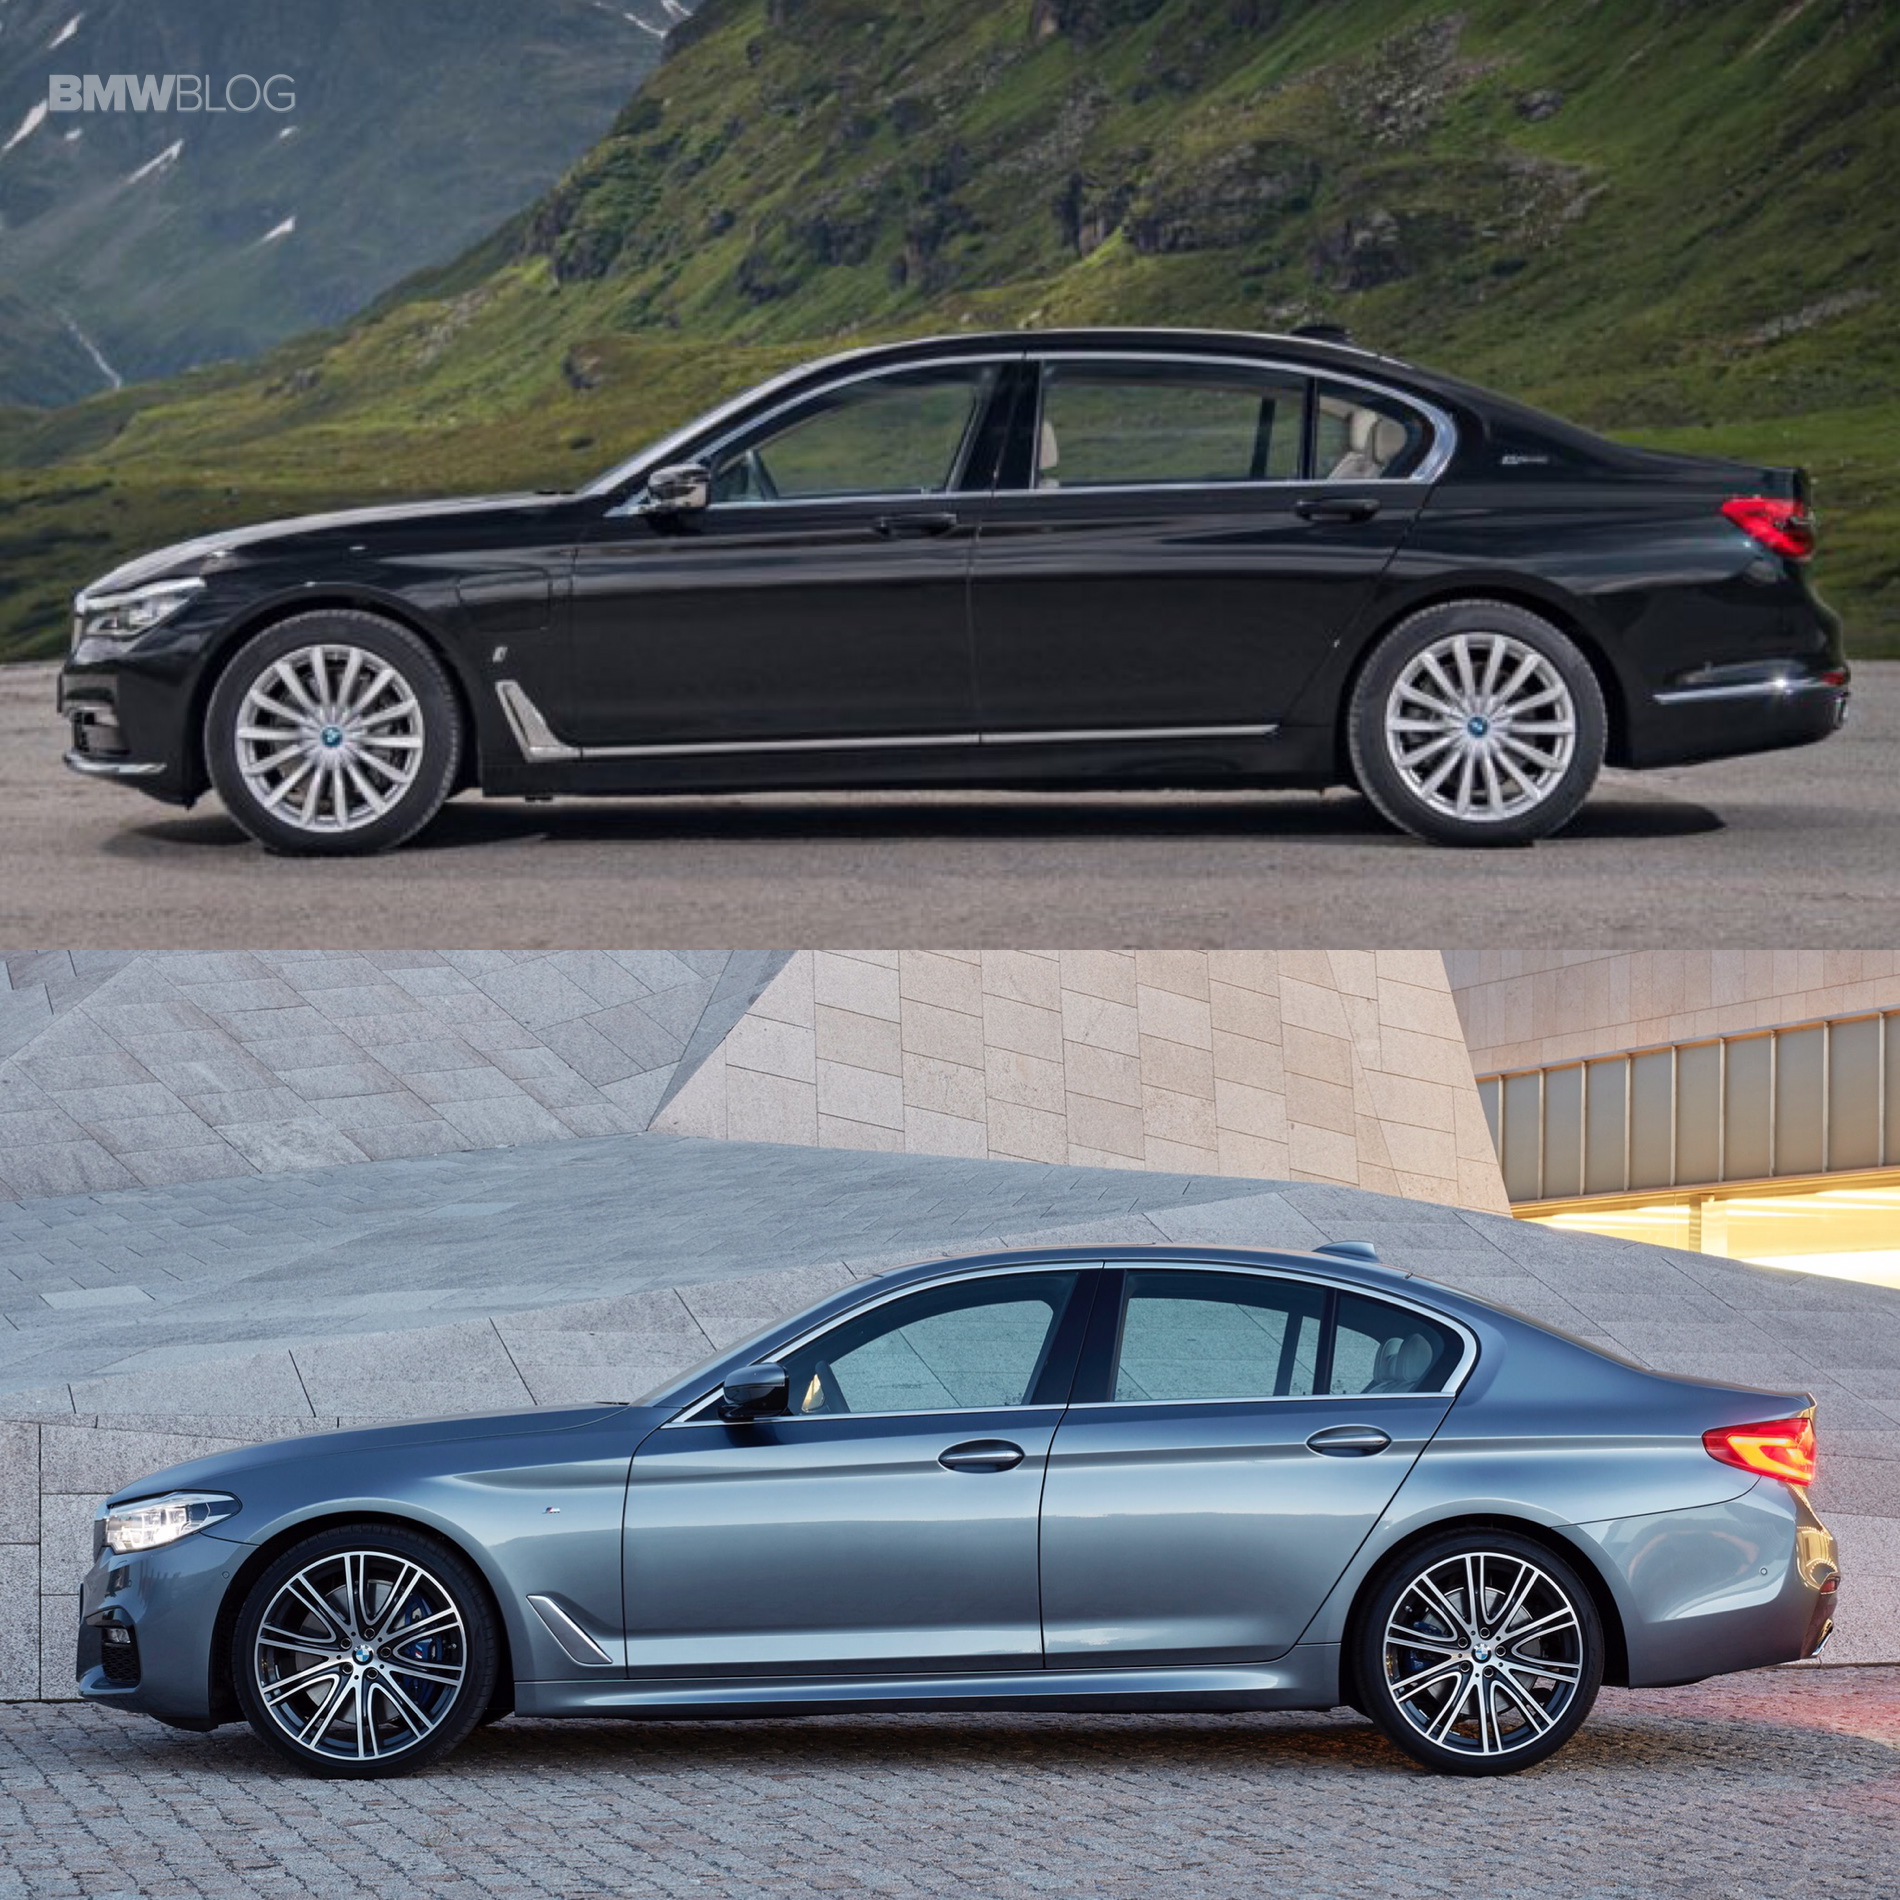 BMW G30 5 Series G11 7 Series comparison 3